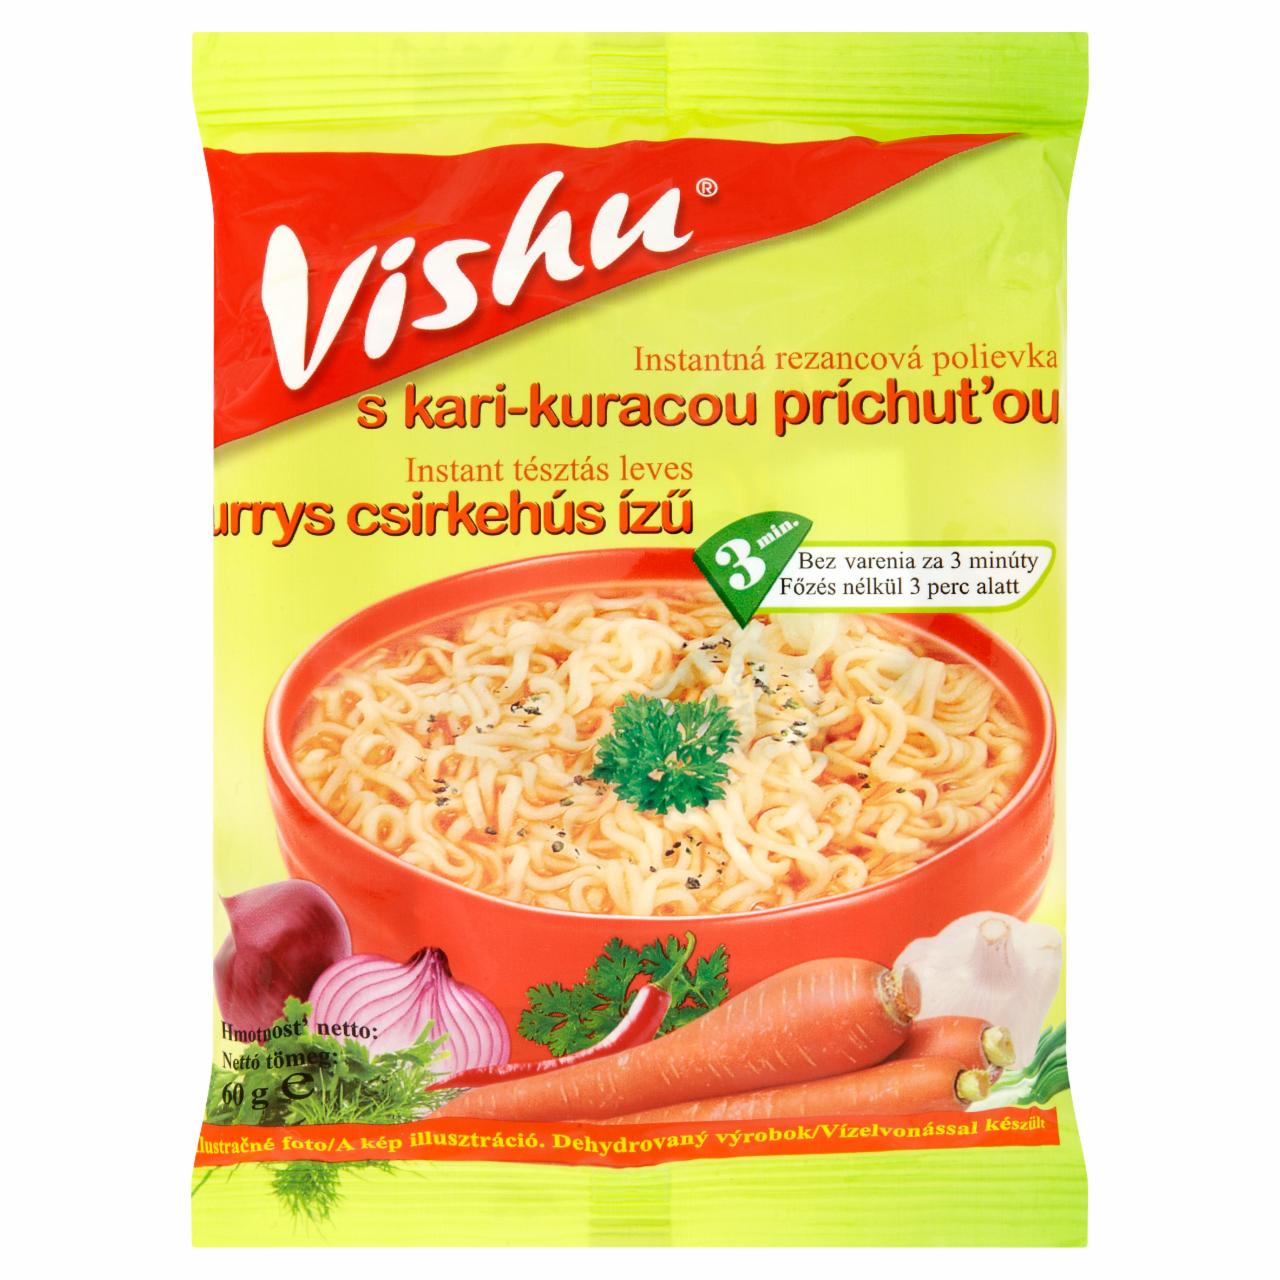 Képek - Vishu currys csirkehús ízű instant tésztás leves 60 g